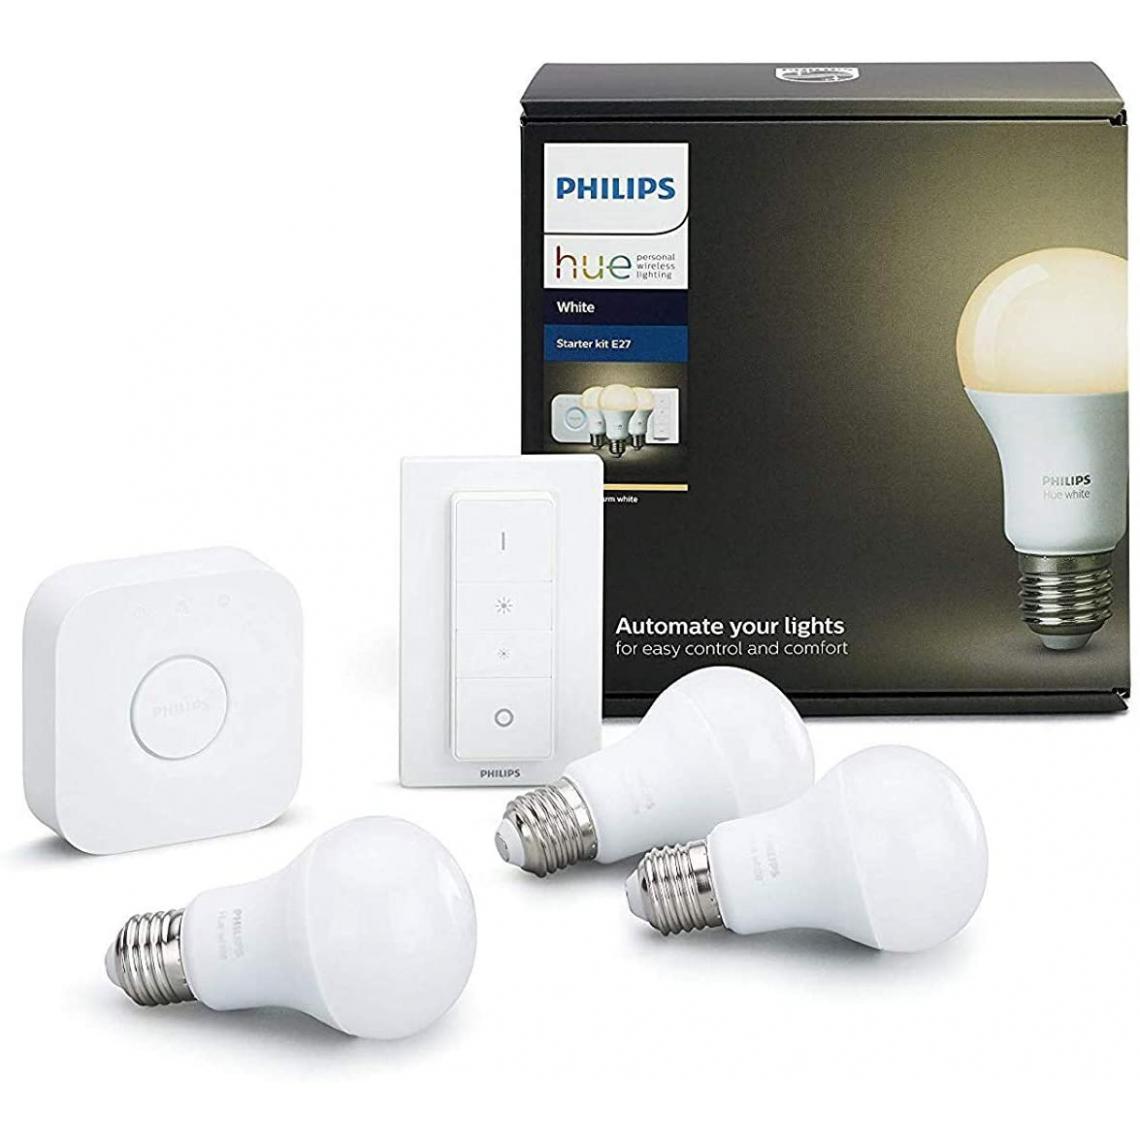 Philips - Kit de démarrage 3 ampoules White E27 + pont de connexion + télécommande Hue incluse (Nouveau) Blanc Fonctionne avec Alexa 1800443 [Classe énergétique A+] - Lampe connectée